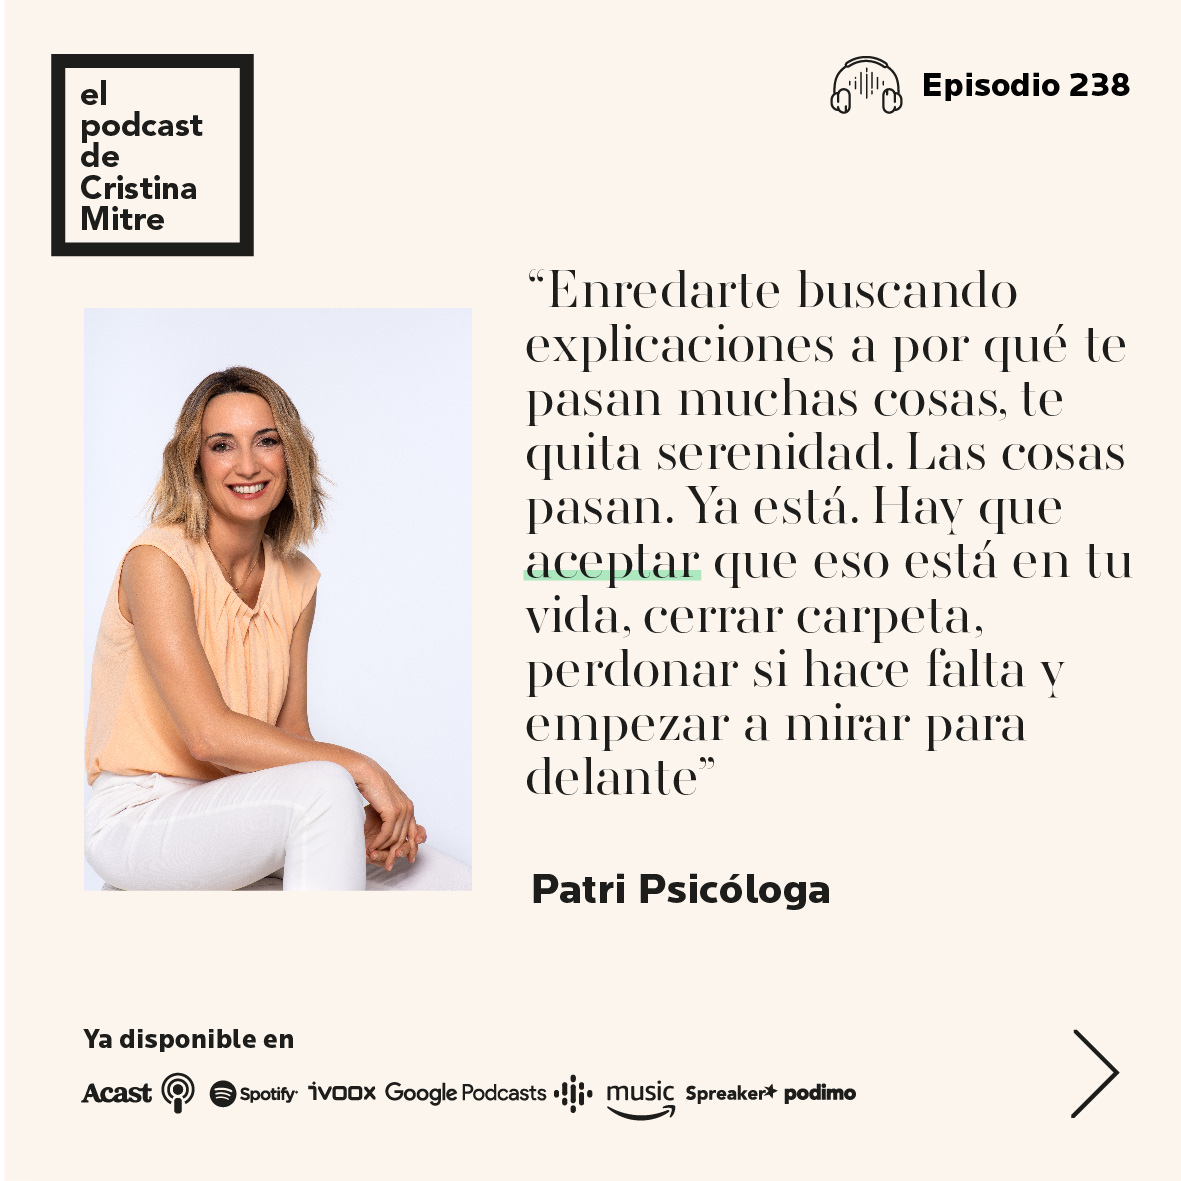 El podcast de Cristina Mitre Patri Psicologa aceptacion